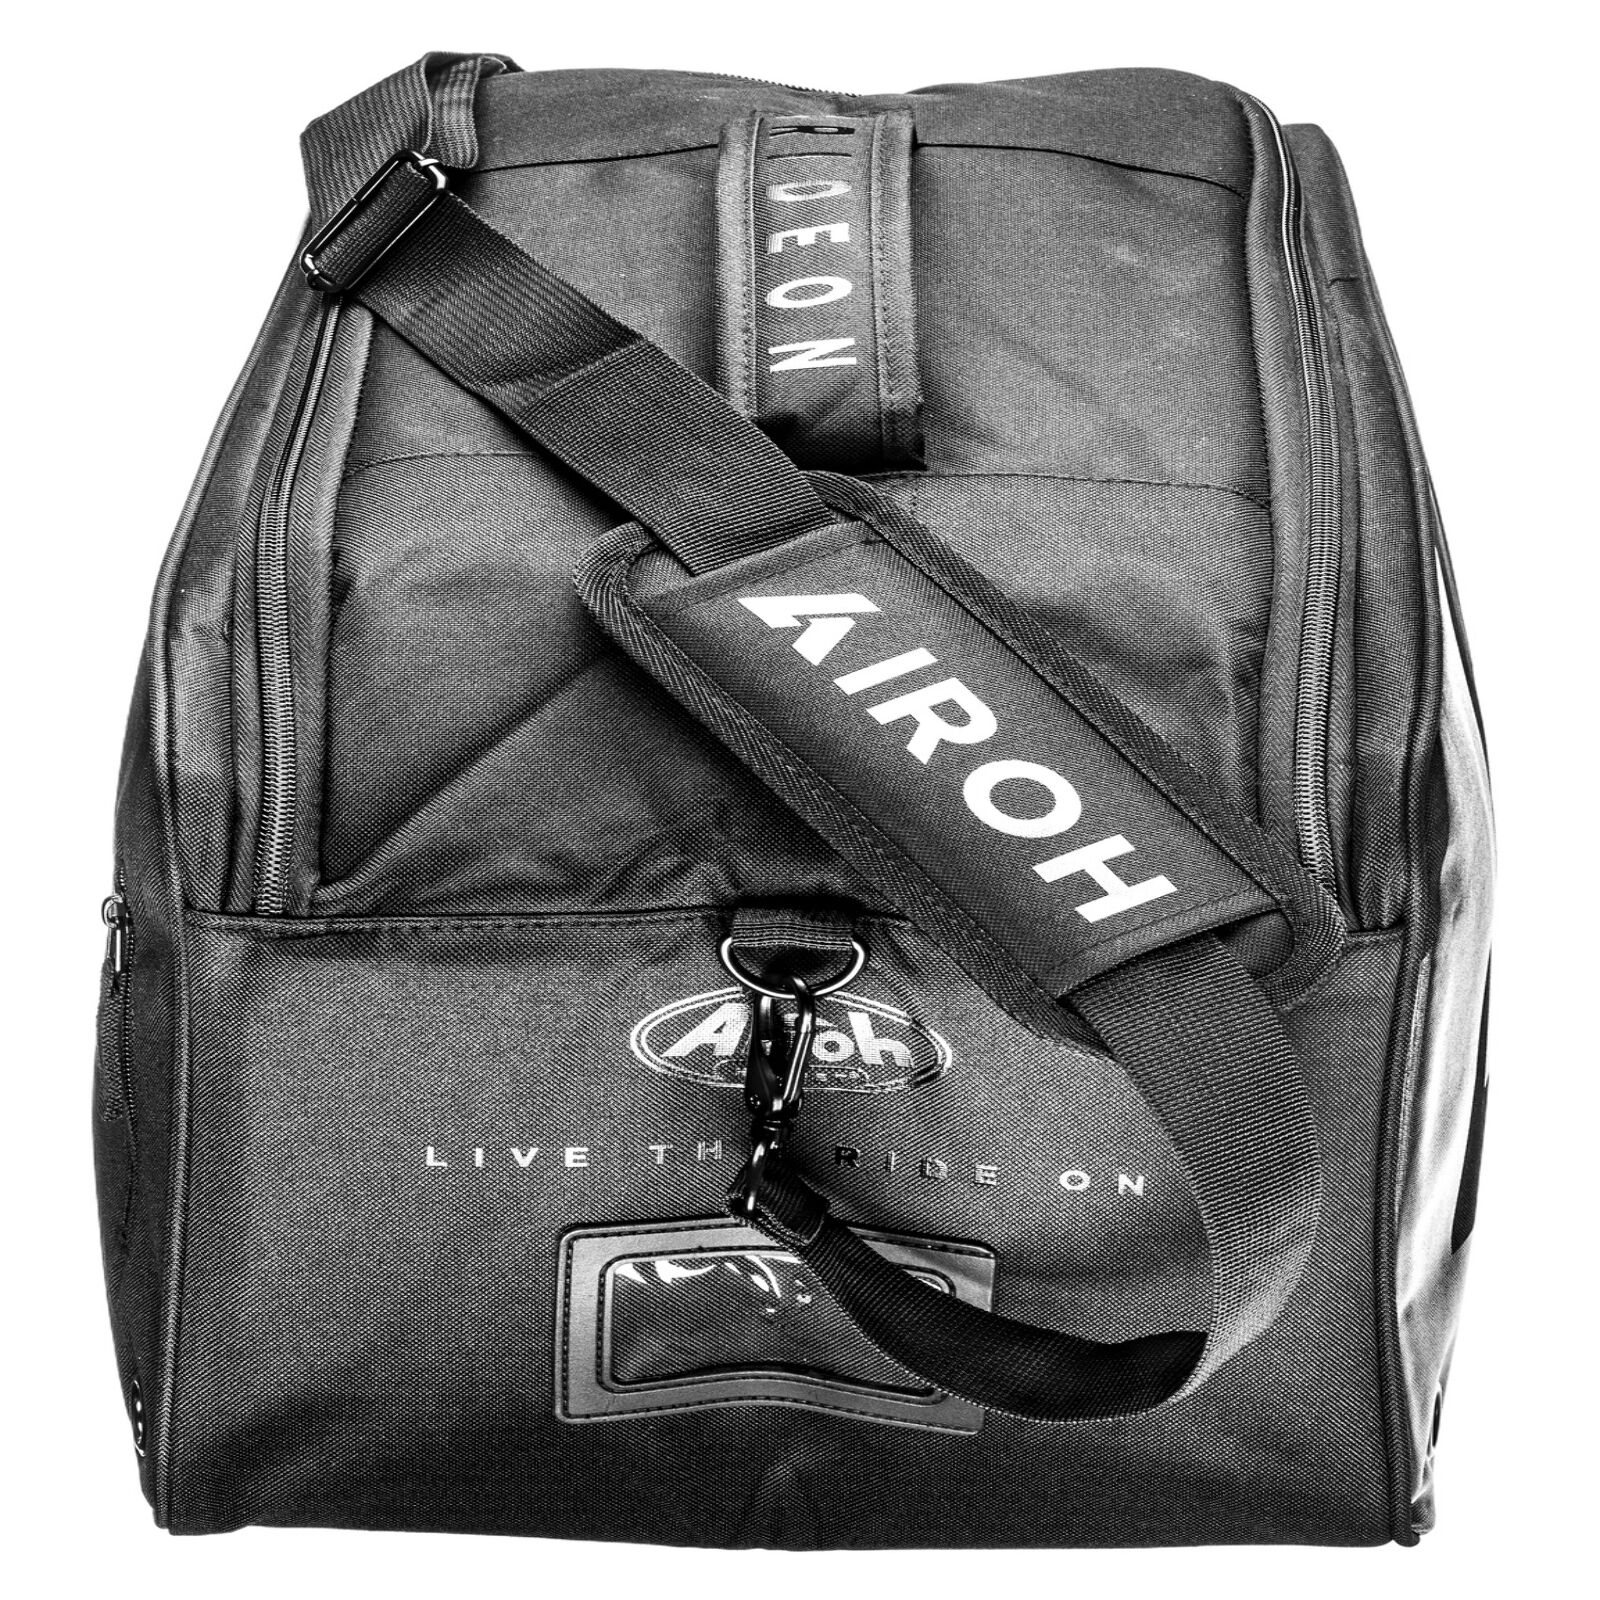 Obrázek produktu taška na přilbu Aviator 3, AIROH 18BOR05